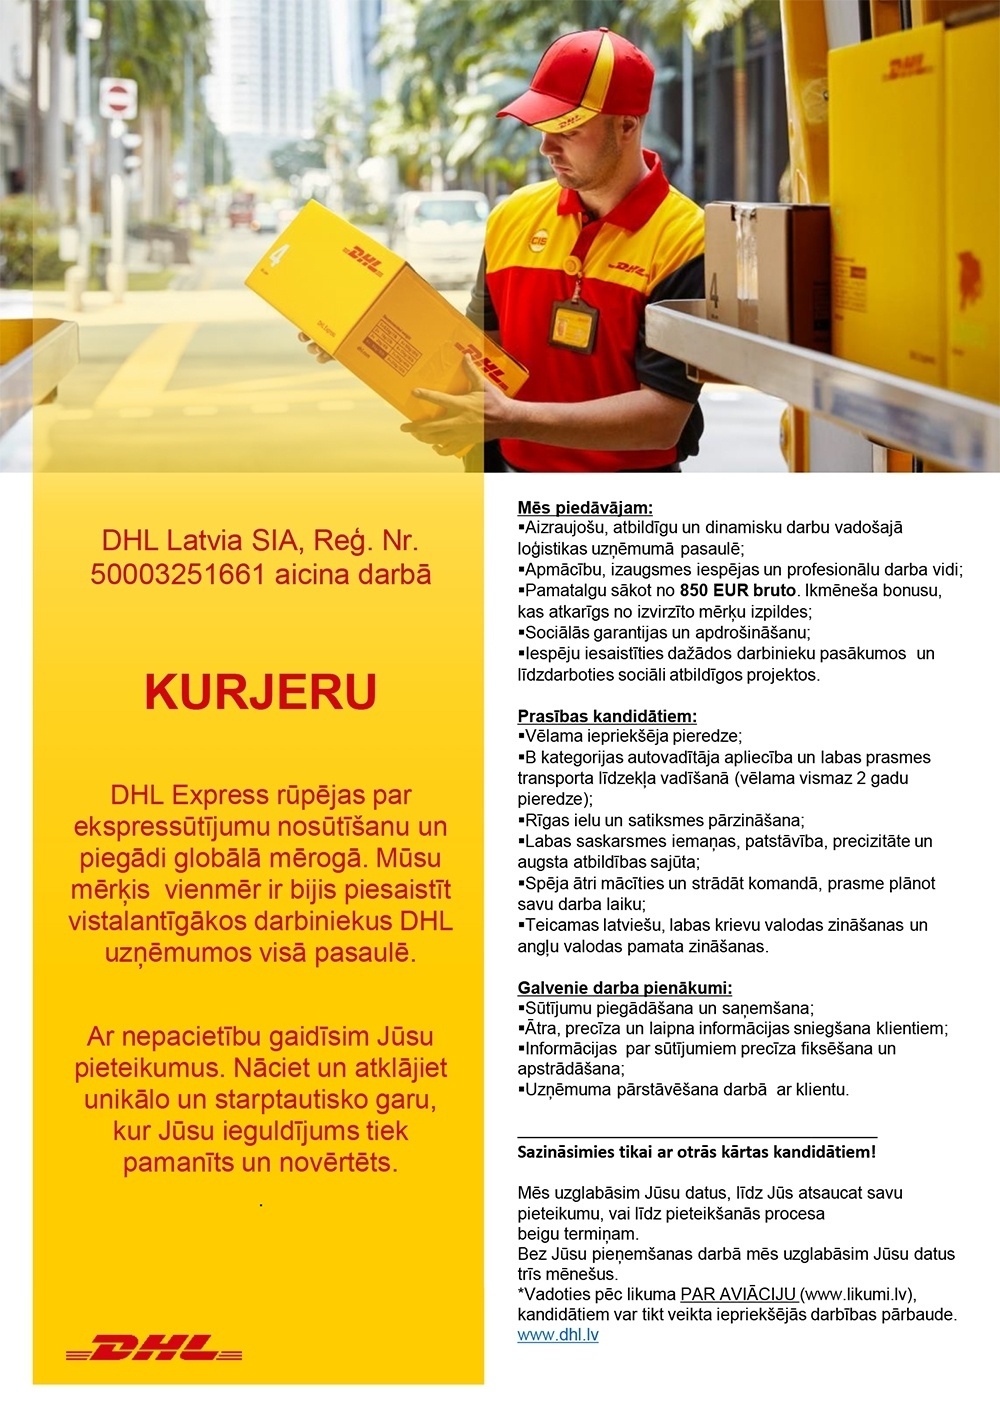 DHL Latvia, SIA Kurjers/-e